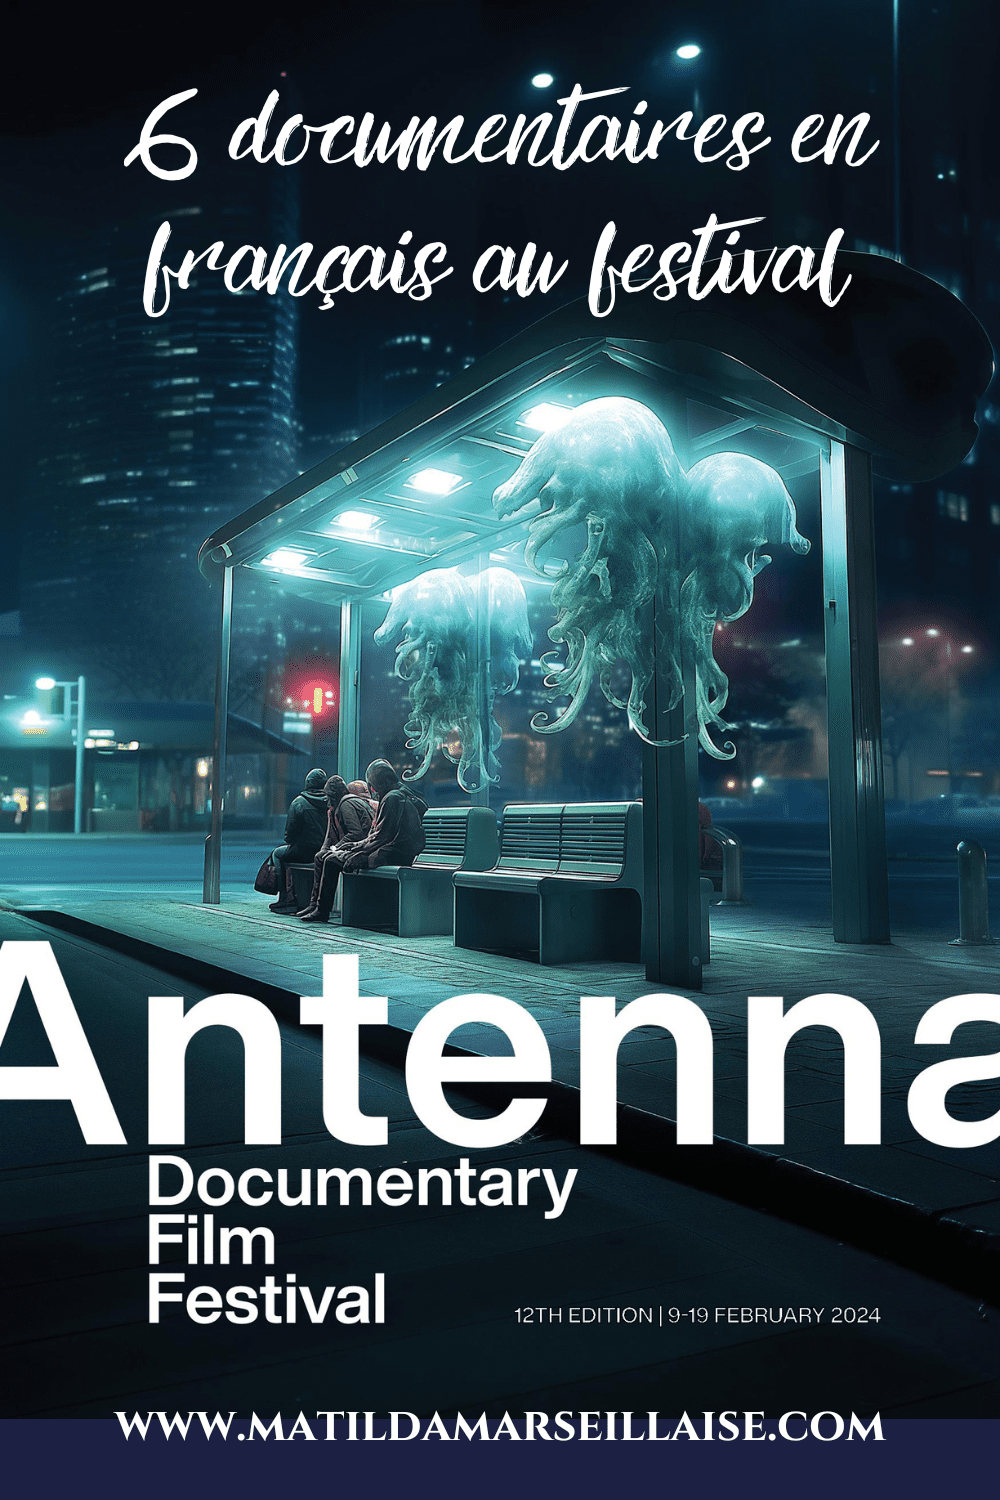 Antenna Documentary Film Festival